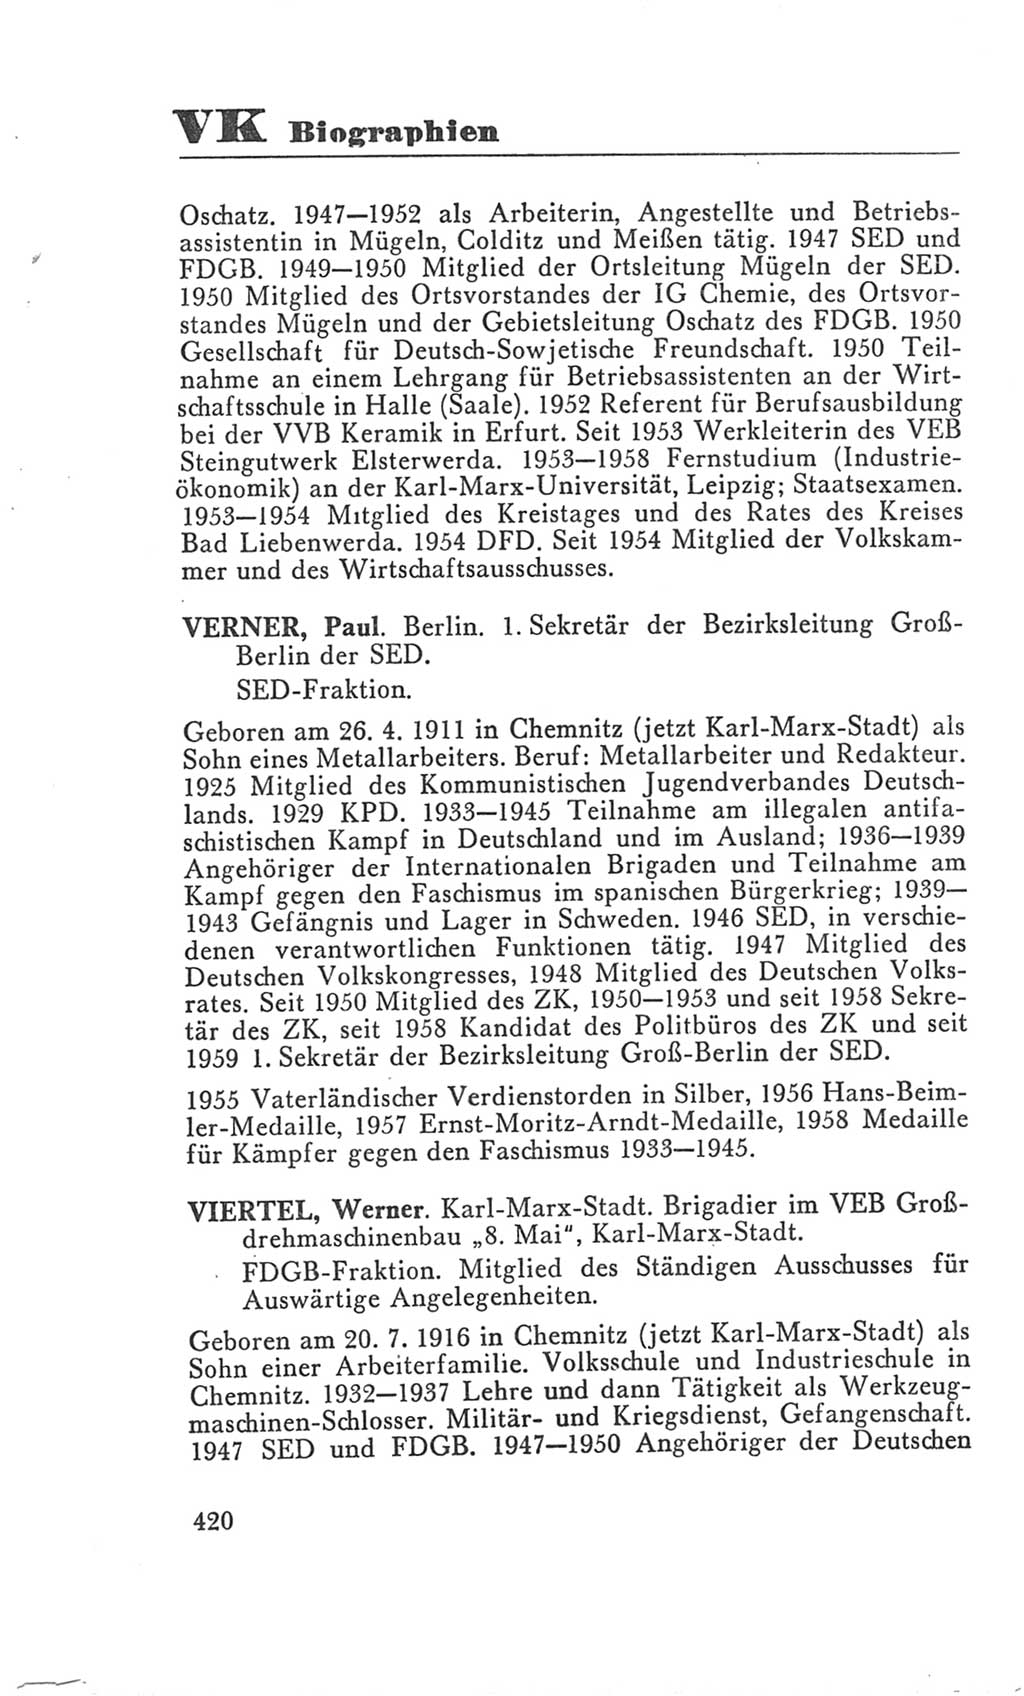 Handbuch der Volkskammer (VK) der Deutschen Demokratischen Republik (DDR), 3. Wahlperiode 1958-1963, Seite 420 (Hdb. VK. DDR 3. WP. 1958-1963, S. 420)